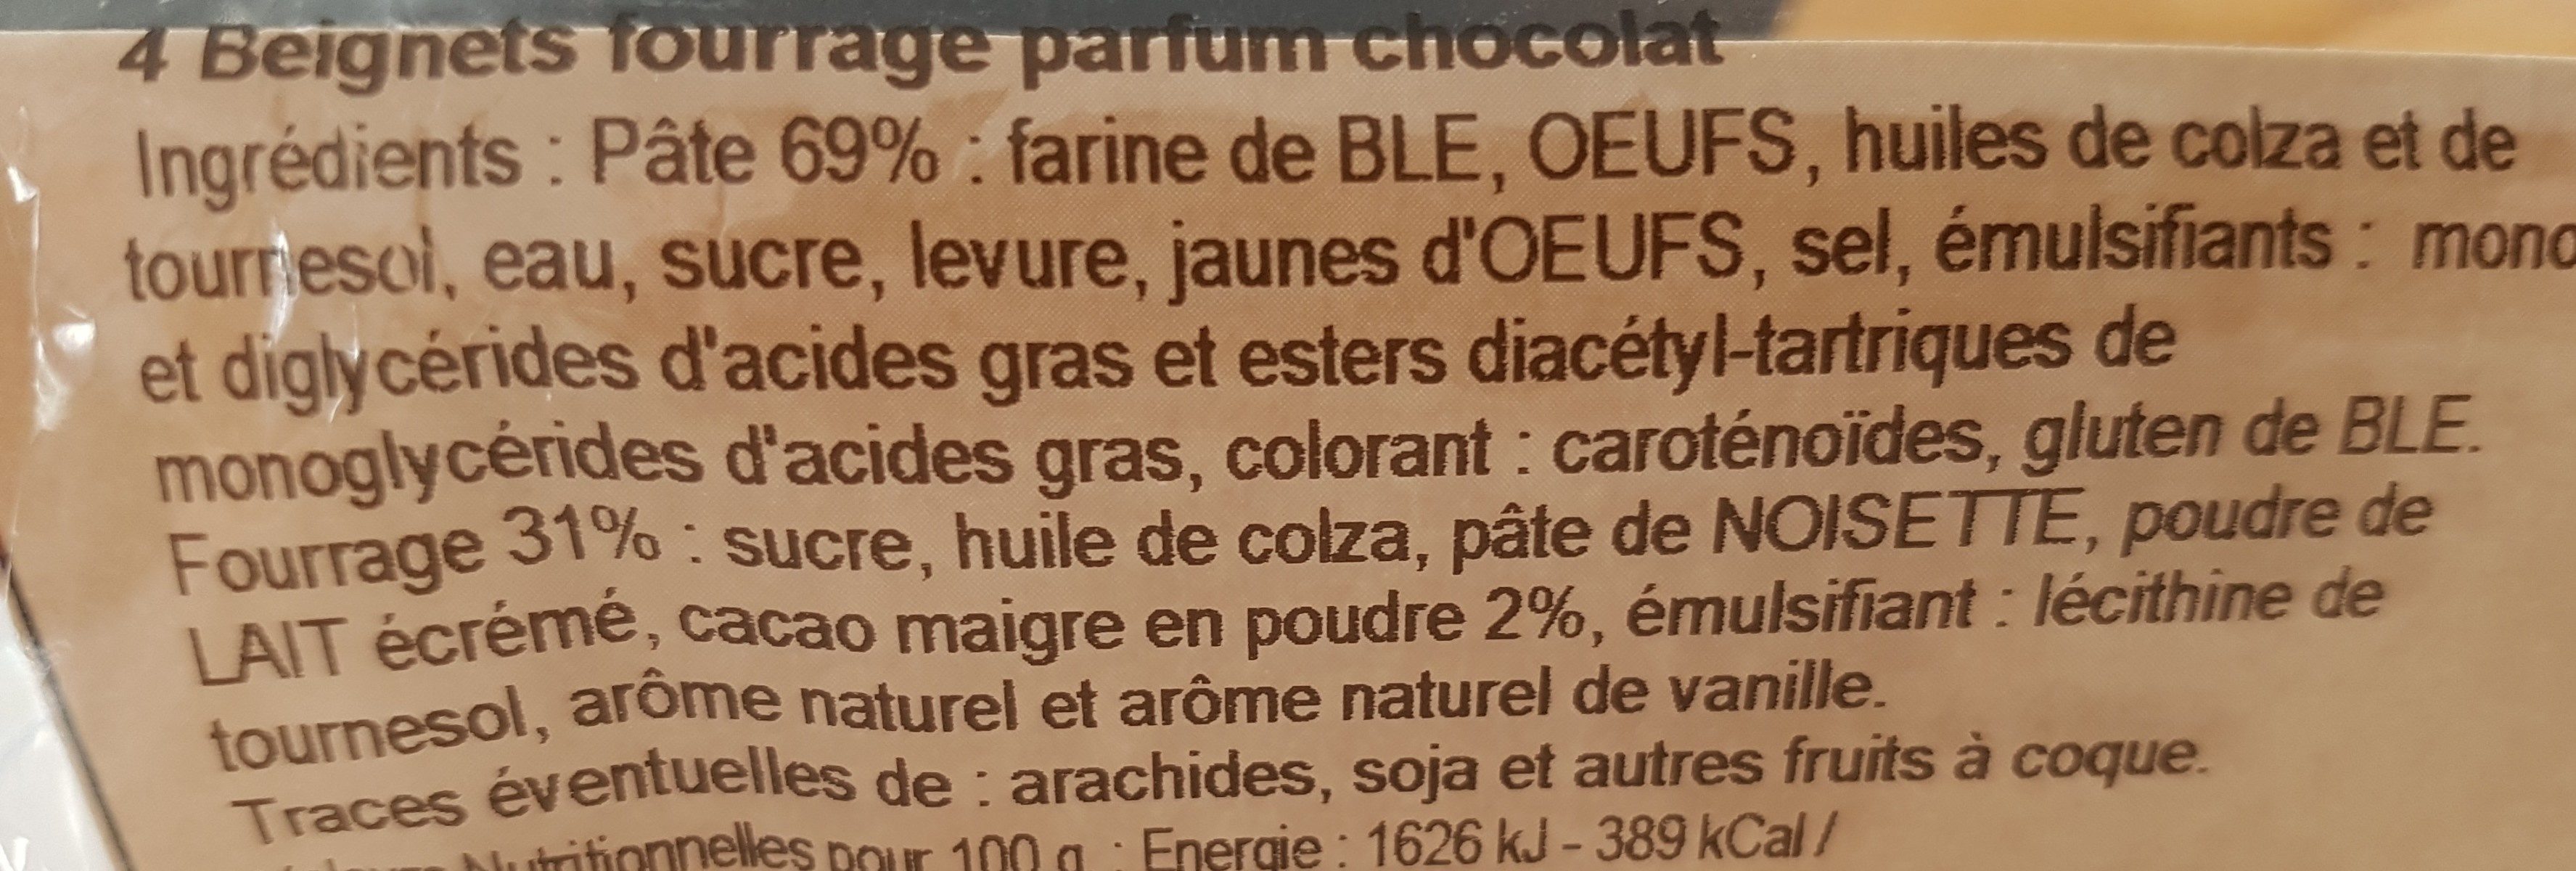 Beignet moelleux au chocolat - Zutaten - fr